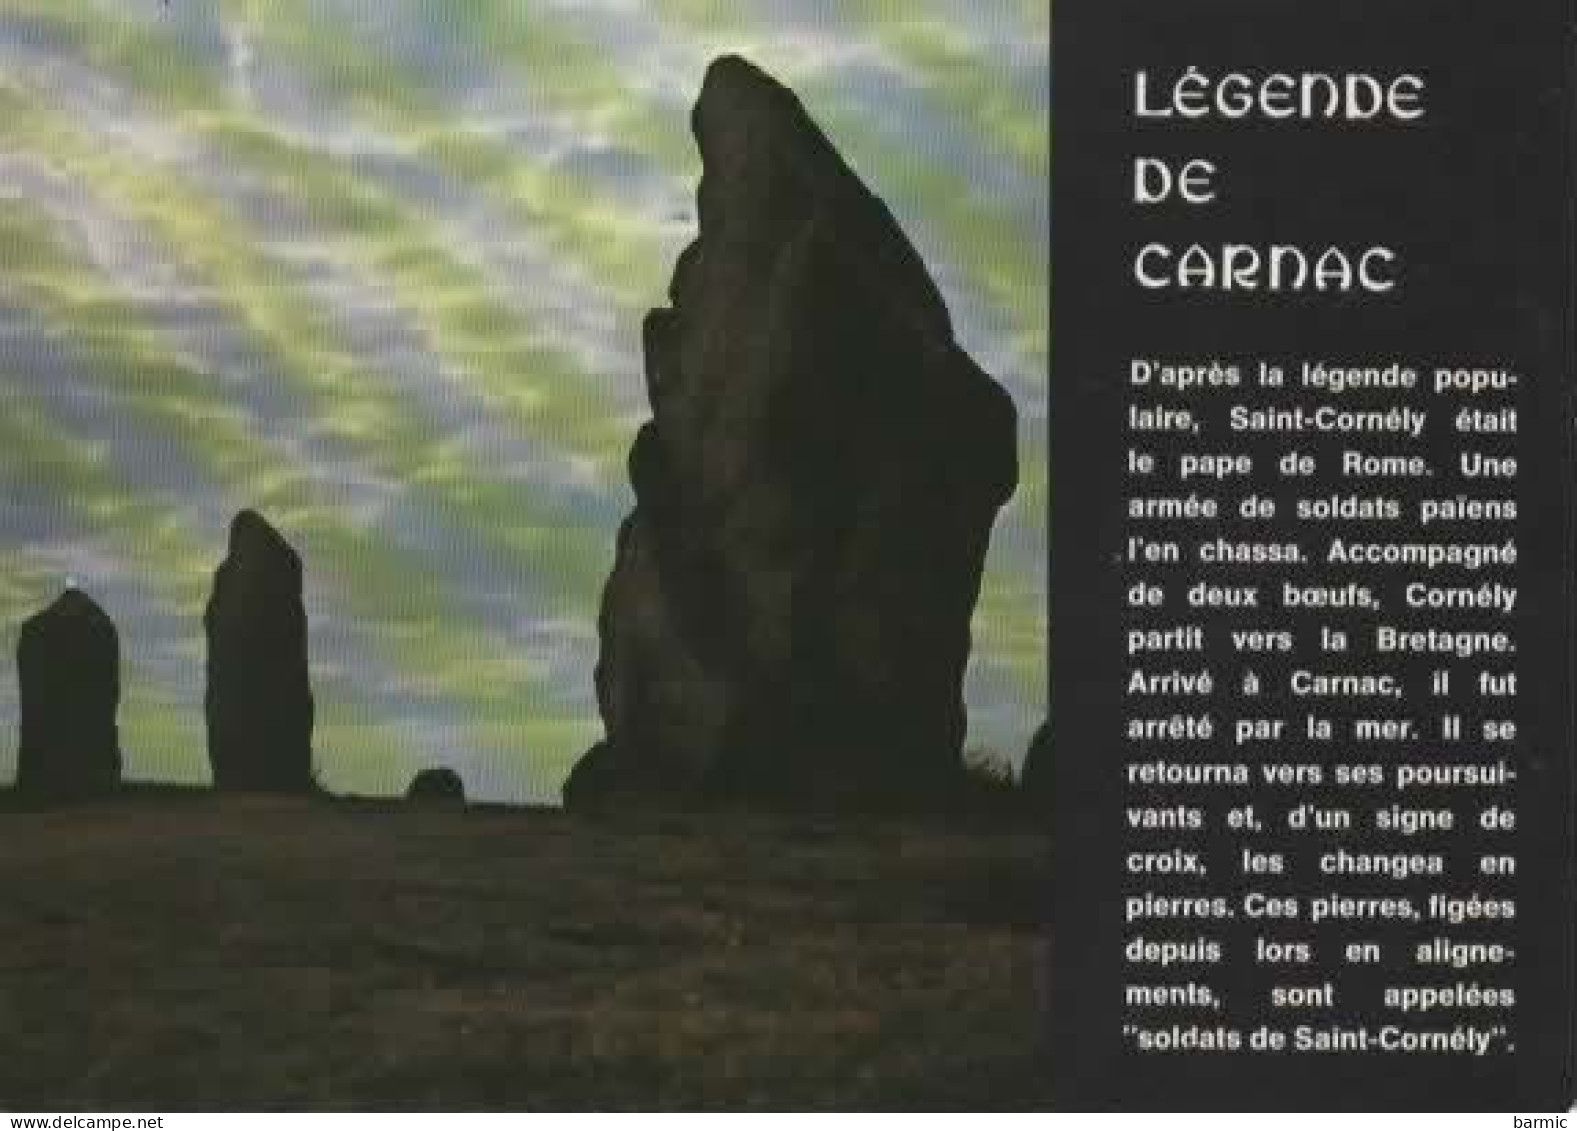 LEGENDE DE CARNAC COULEUR REF  13921 - Fairy Tales, Popular Stories & Legends